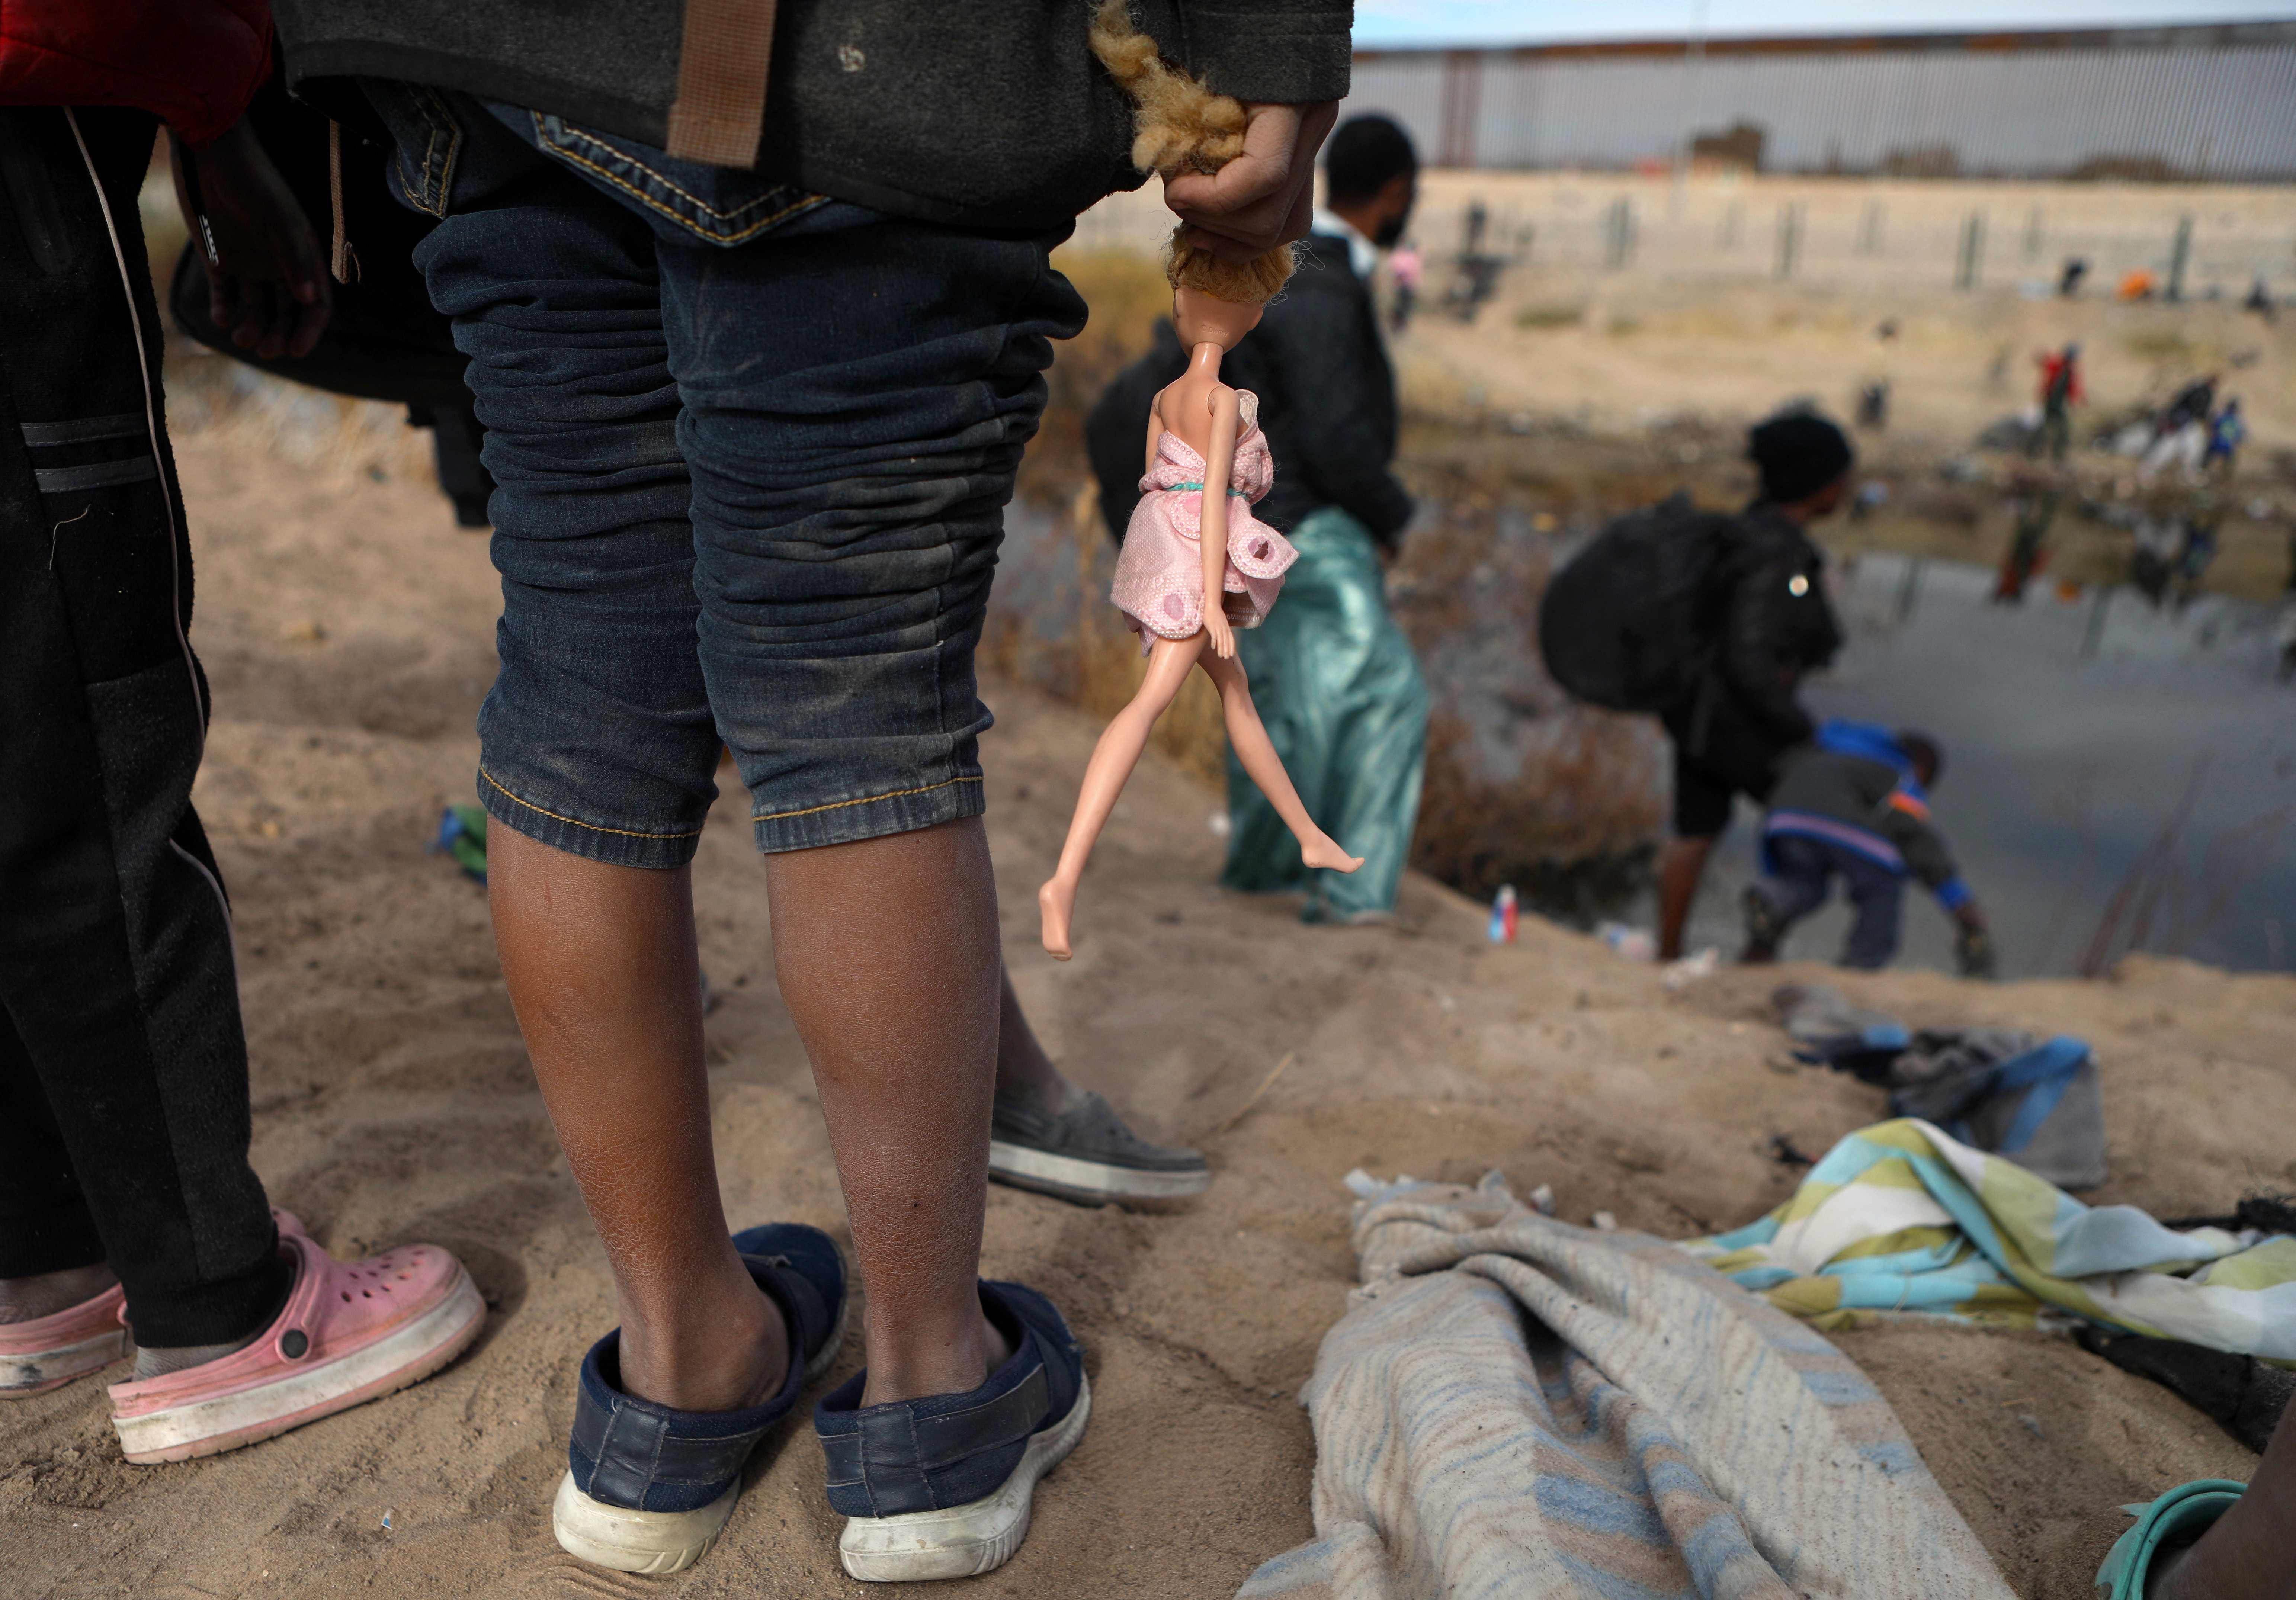 Decenas de migrantes, muchos de ellos niños, buscan llegar de manera irregular a EE. UU., pero su travesía por México se vuelve peligrosa ante los secuestros y acoso del crimen organizado. (Foto Prensa Libre: AFP)